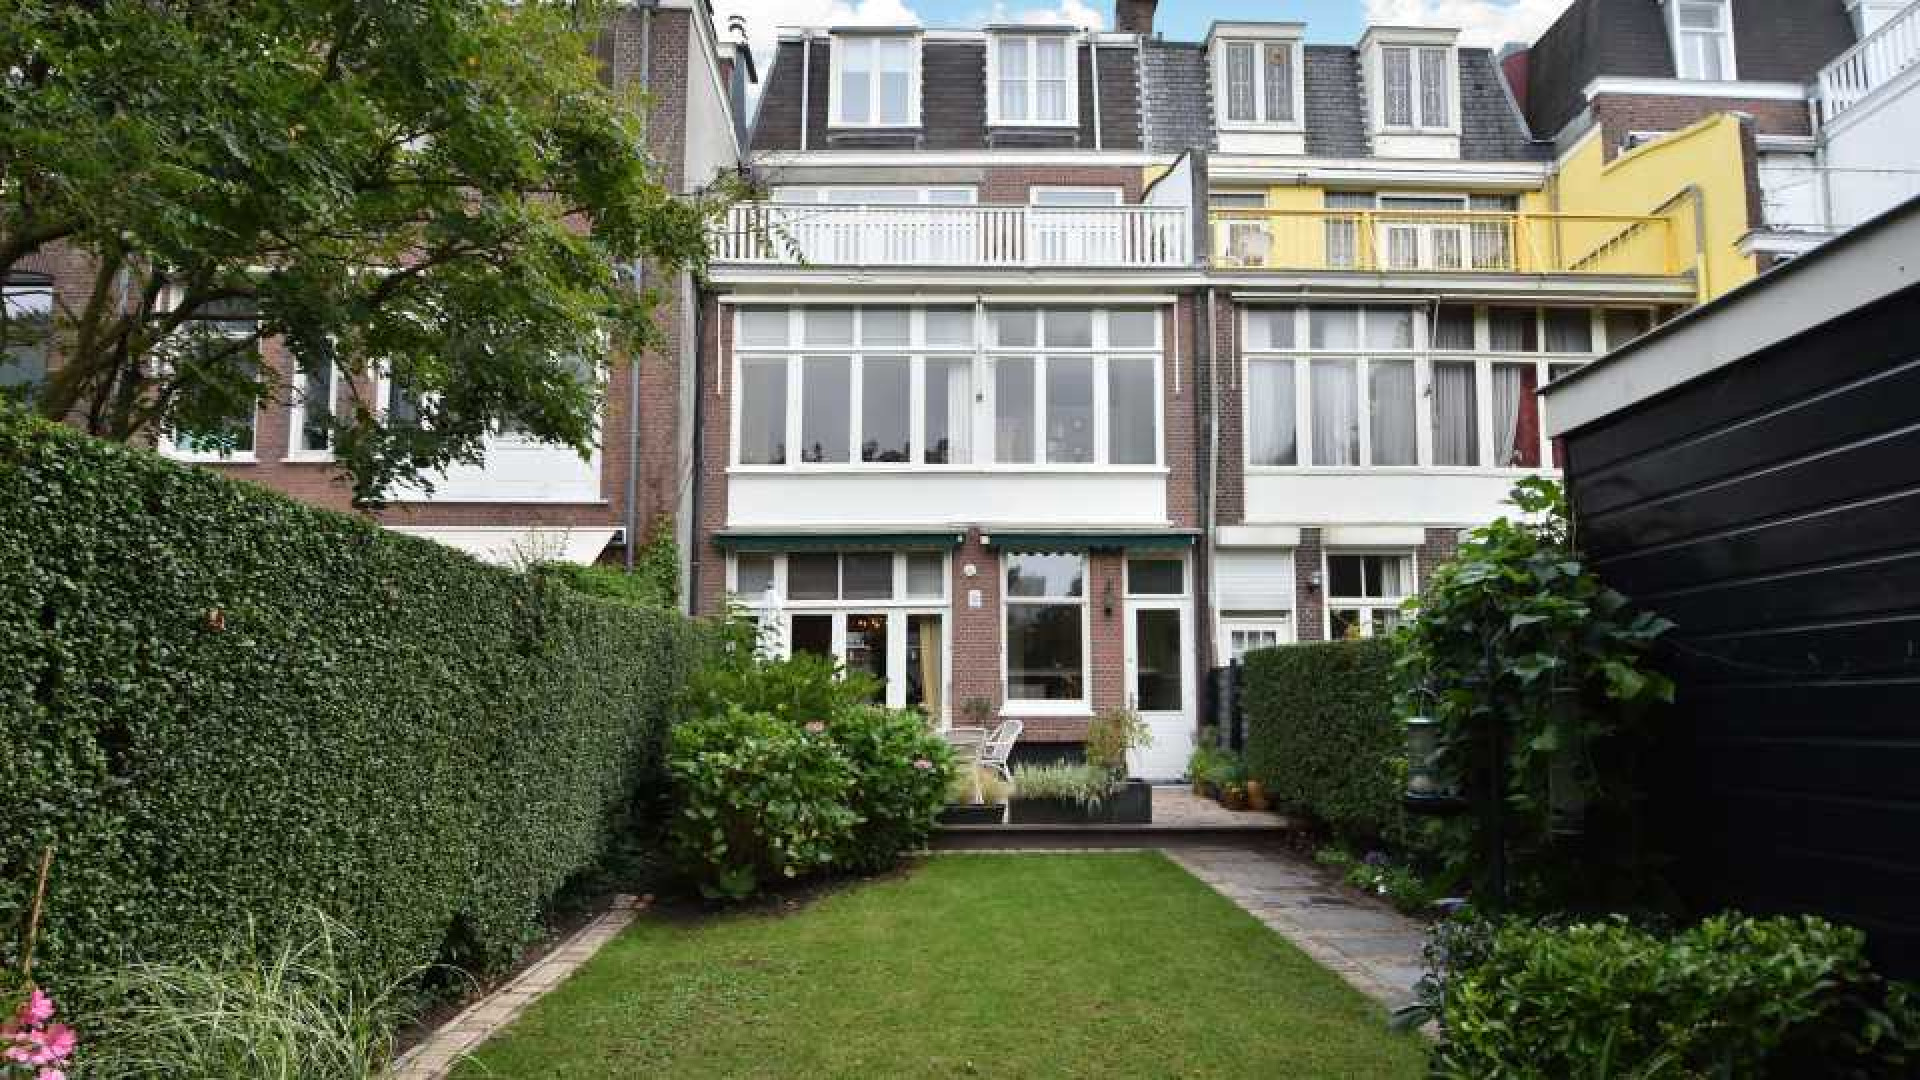 Sigrid Kaag koopt miljoenenpand in statige Haagse buurt. Zie foto's 11